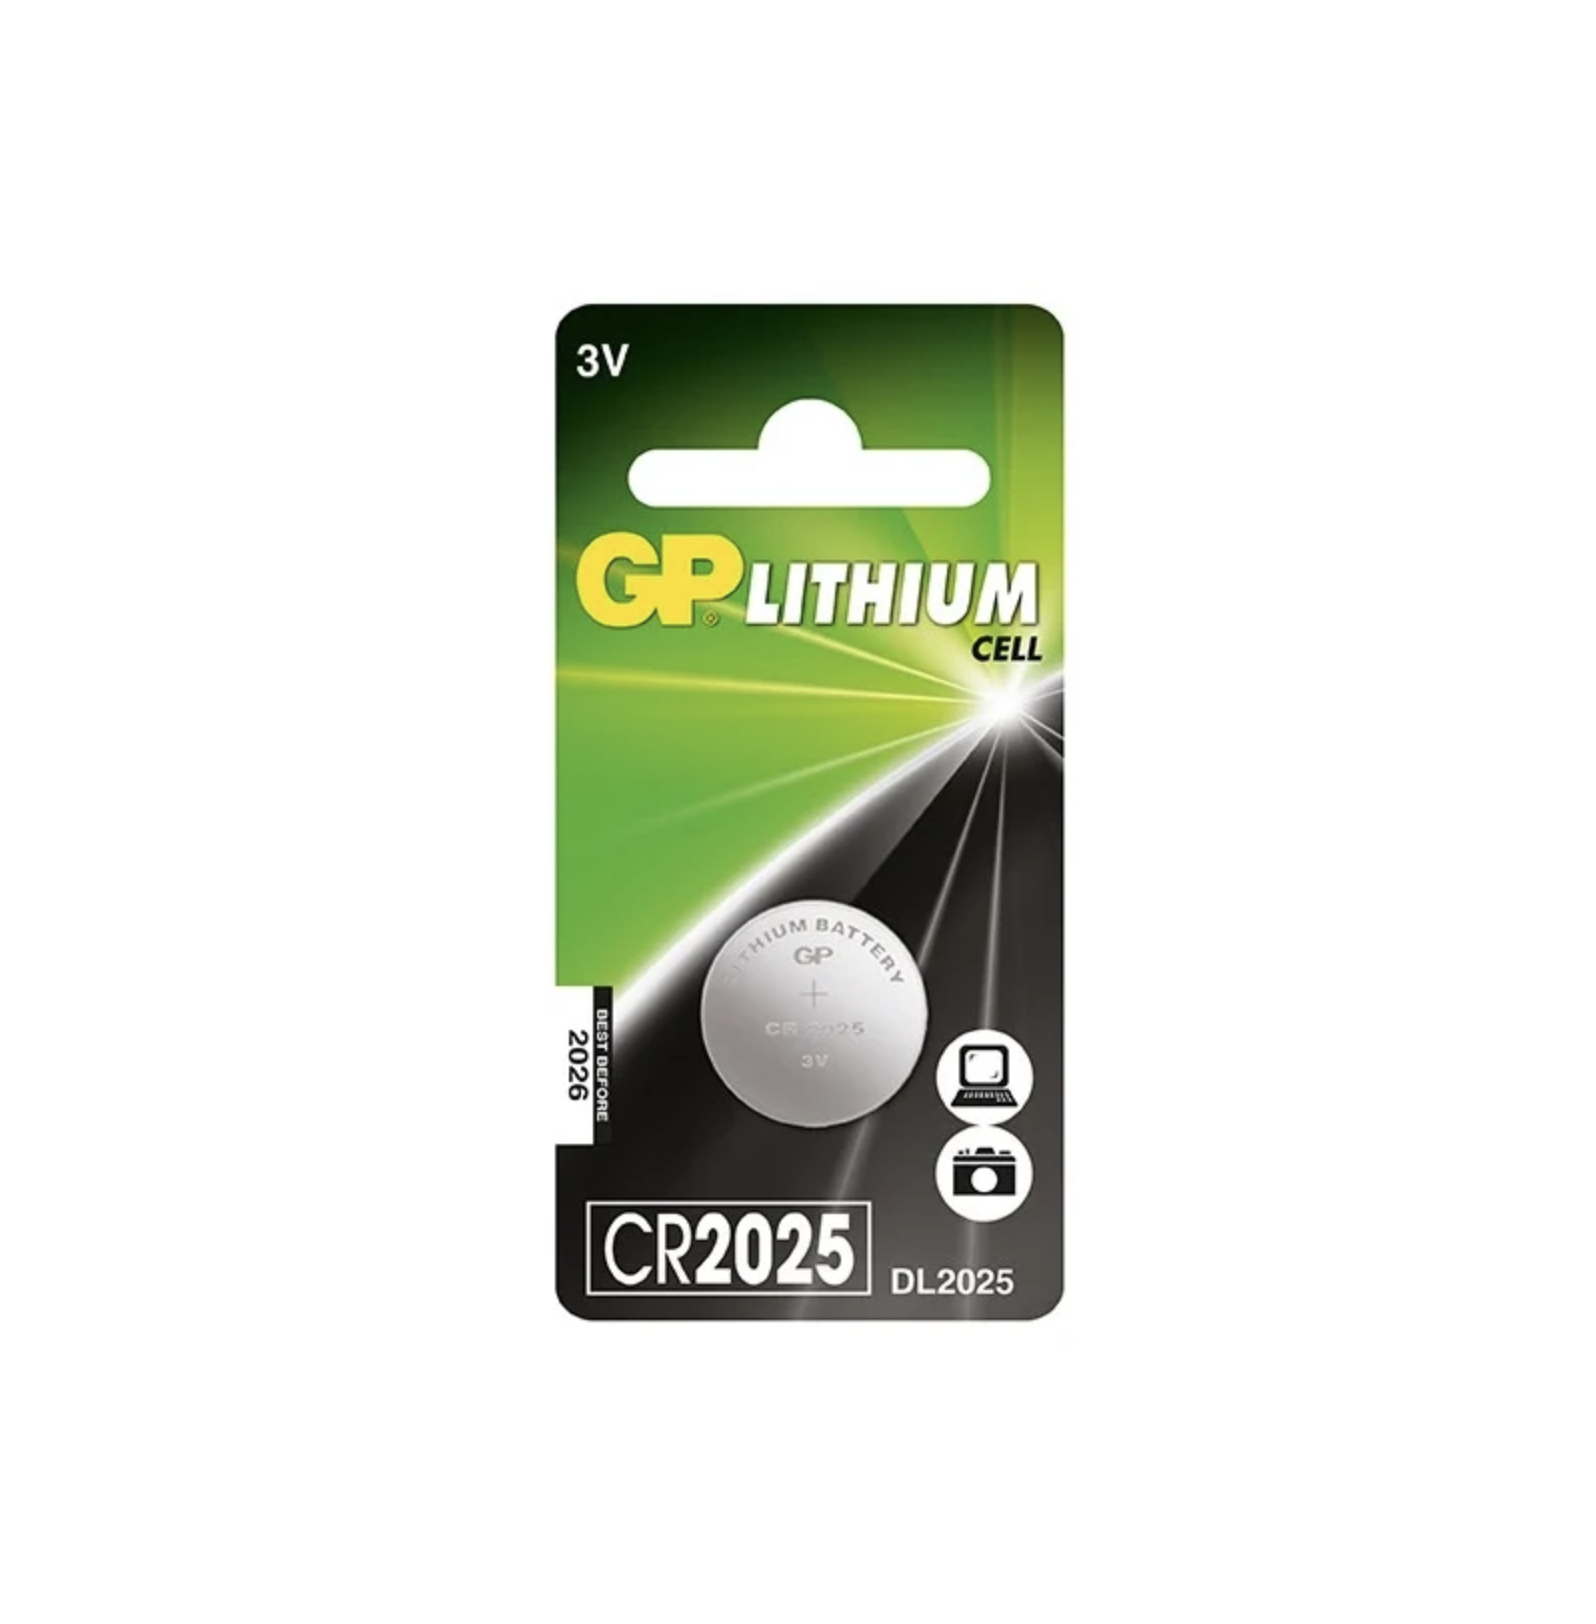  GP -  Lithium Longer Lasting Power CR2025 3V 1 